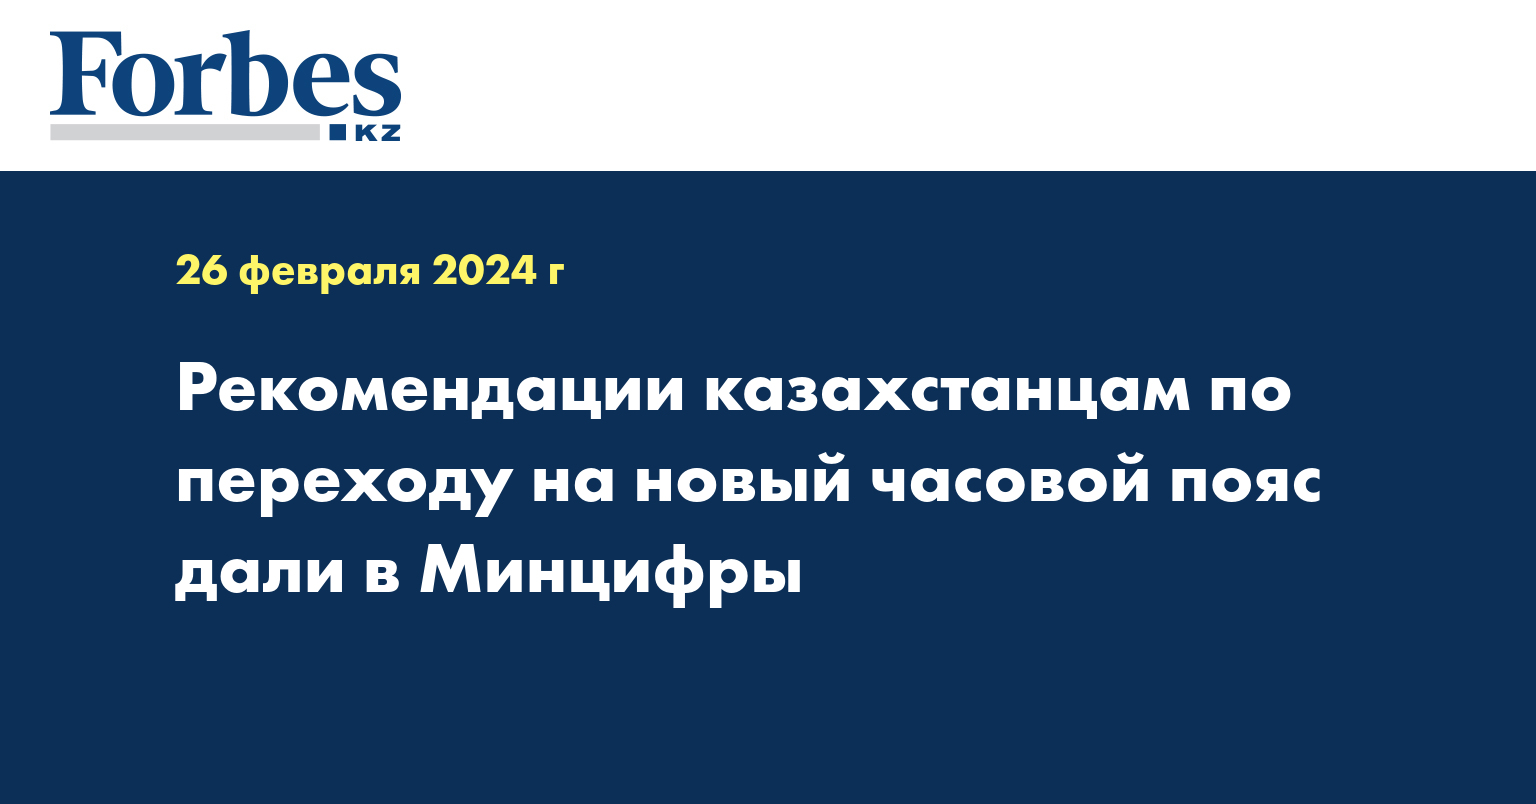 Рекомендации казахстанцам по переходу на новый часовой пояс дали в Минцифры